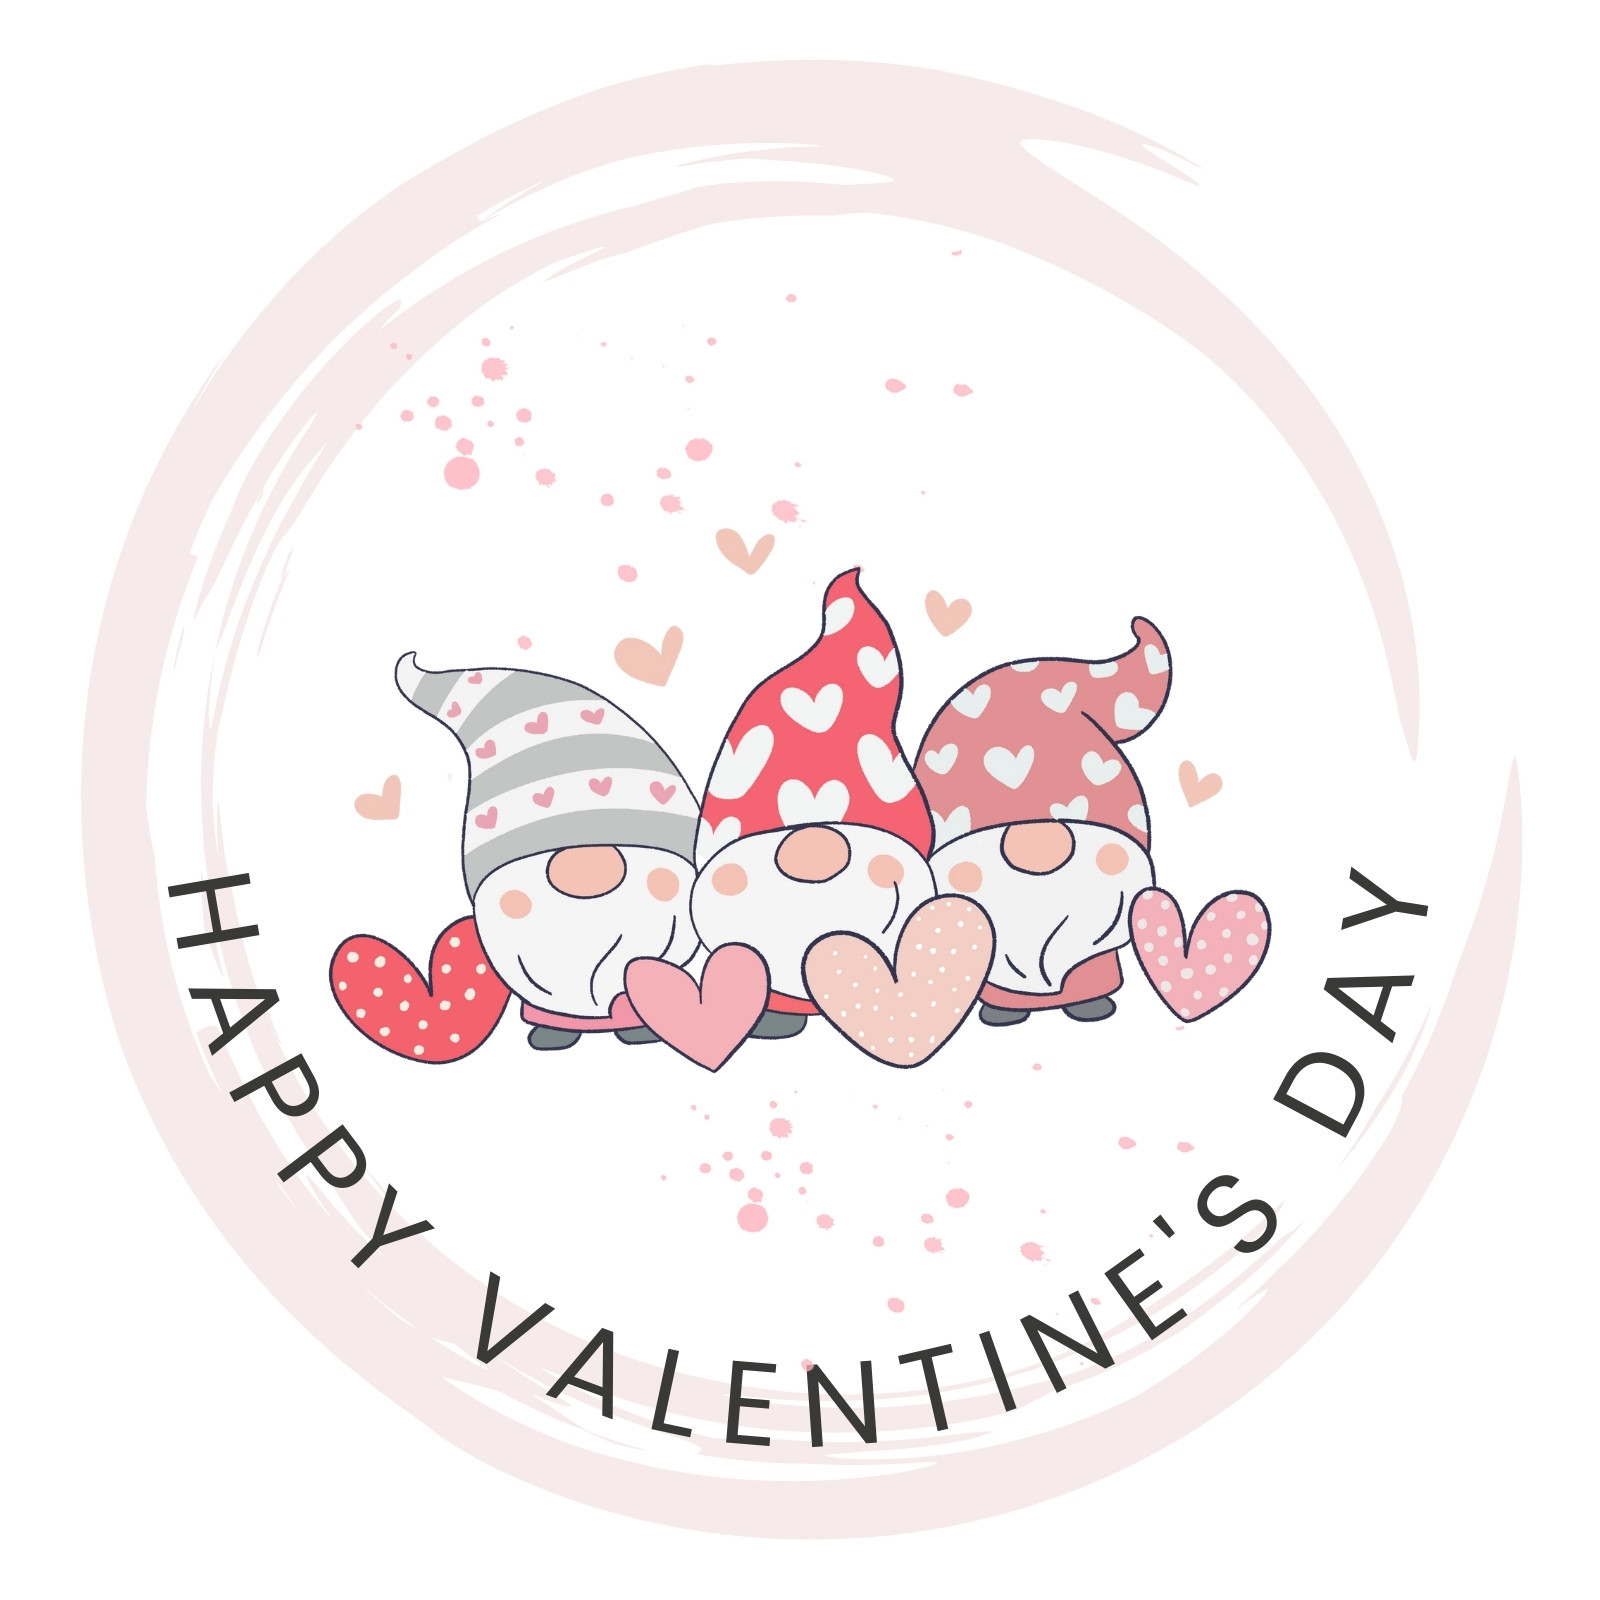 happy valentine day Sticker